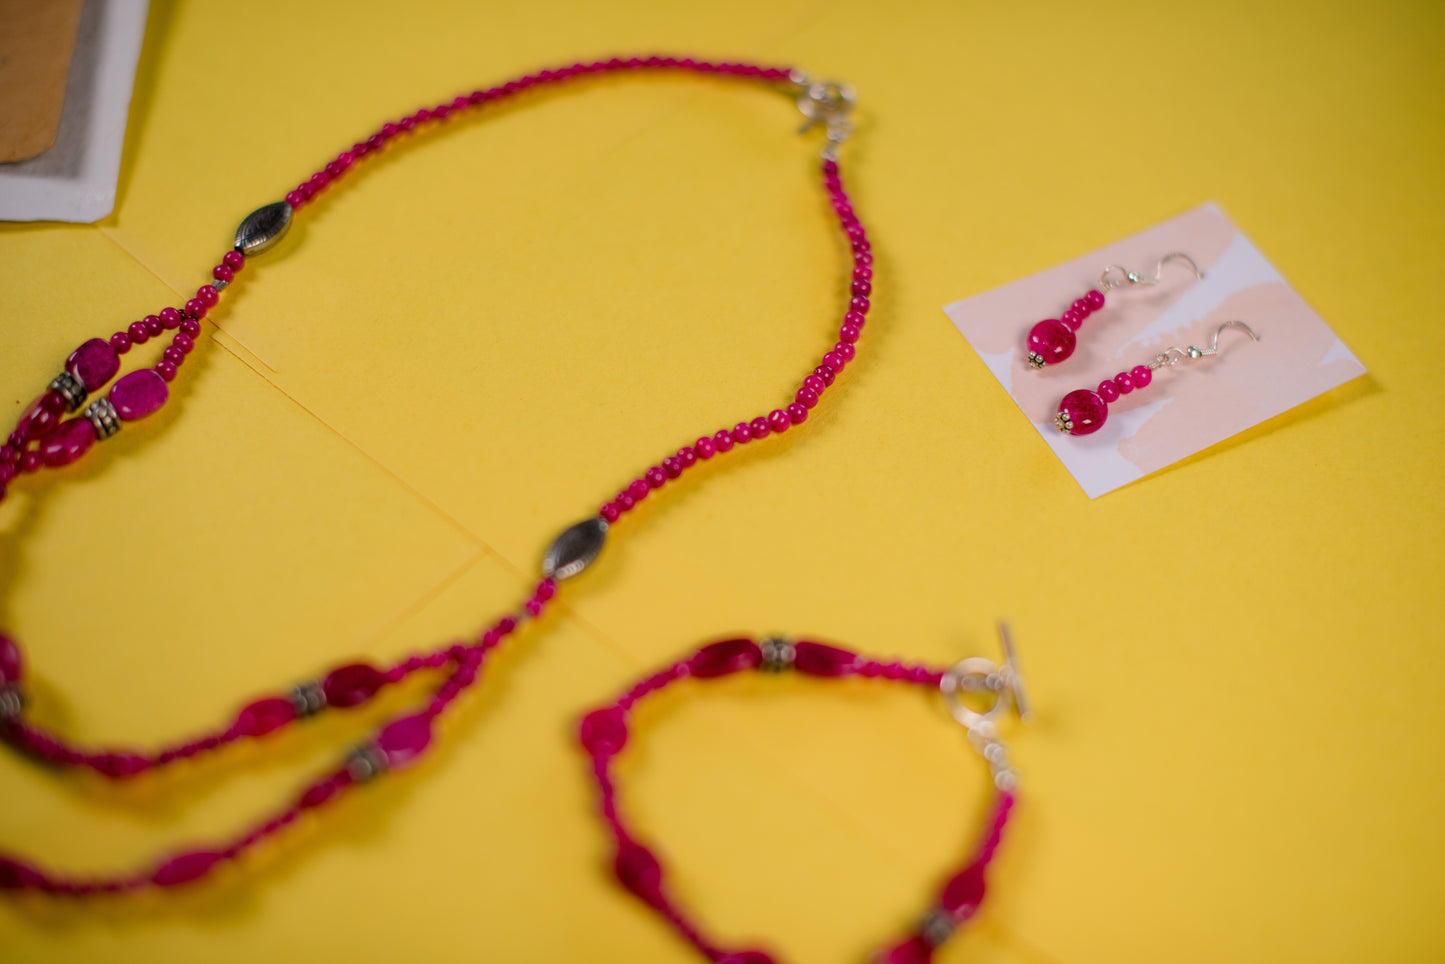 Dark Pink Necklace/Bracelet/Earrings Set